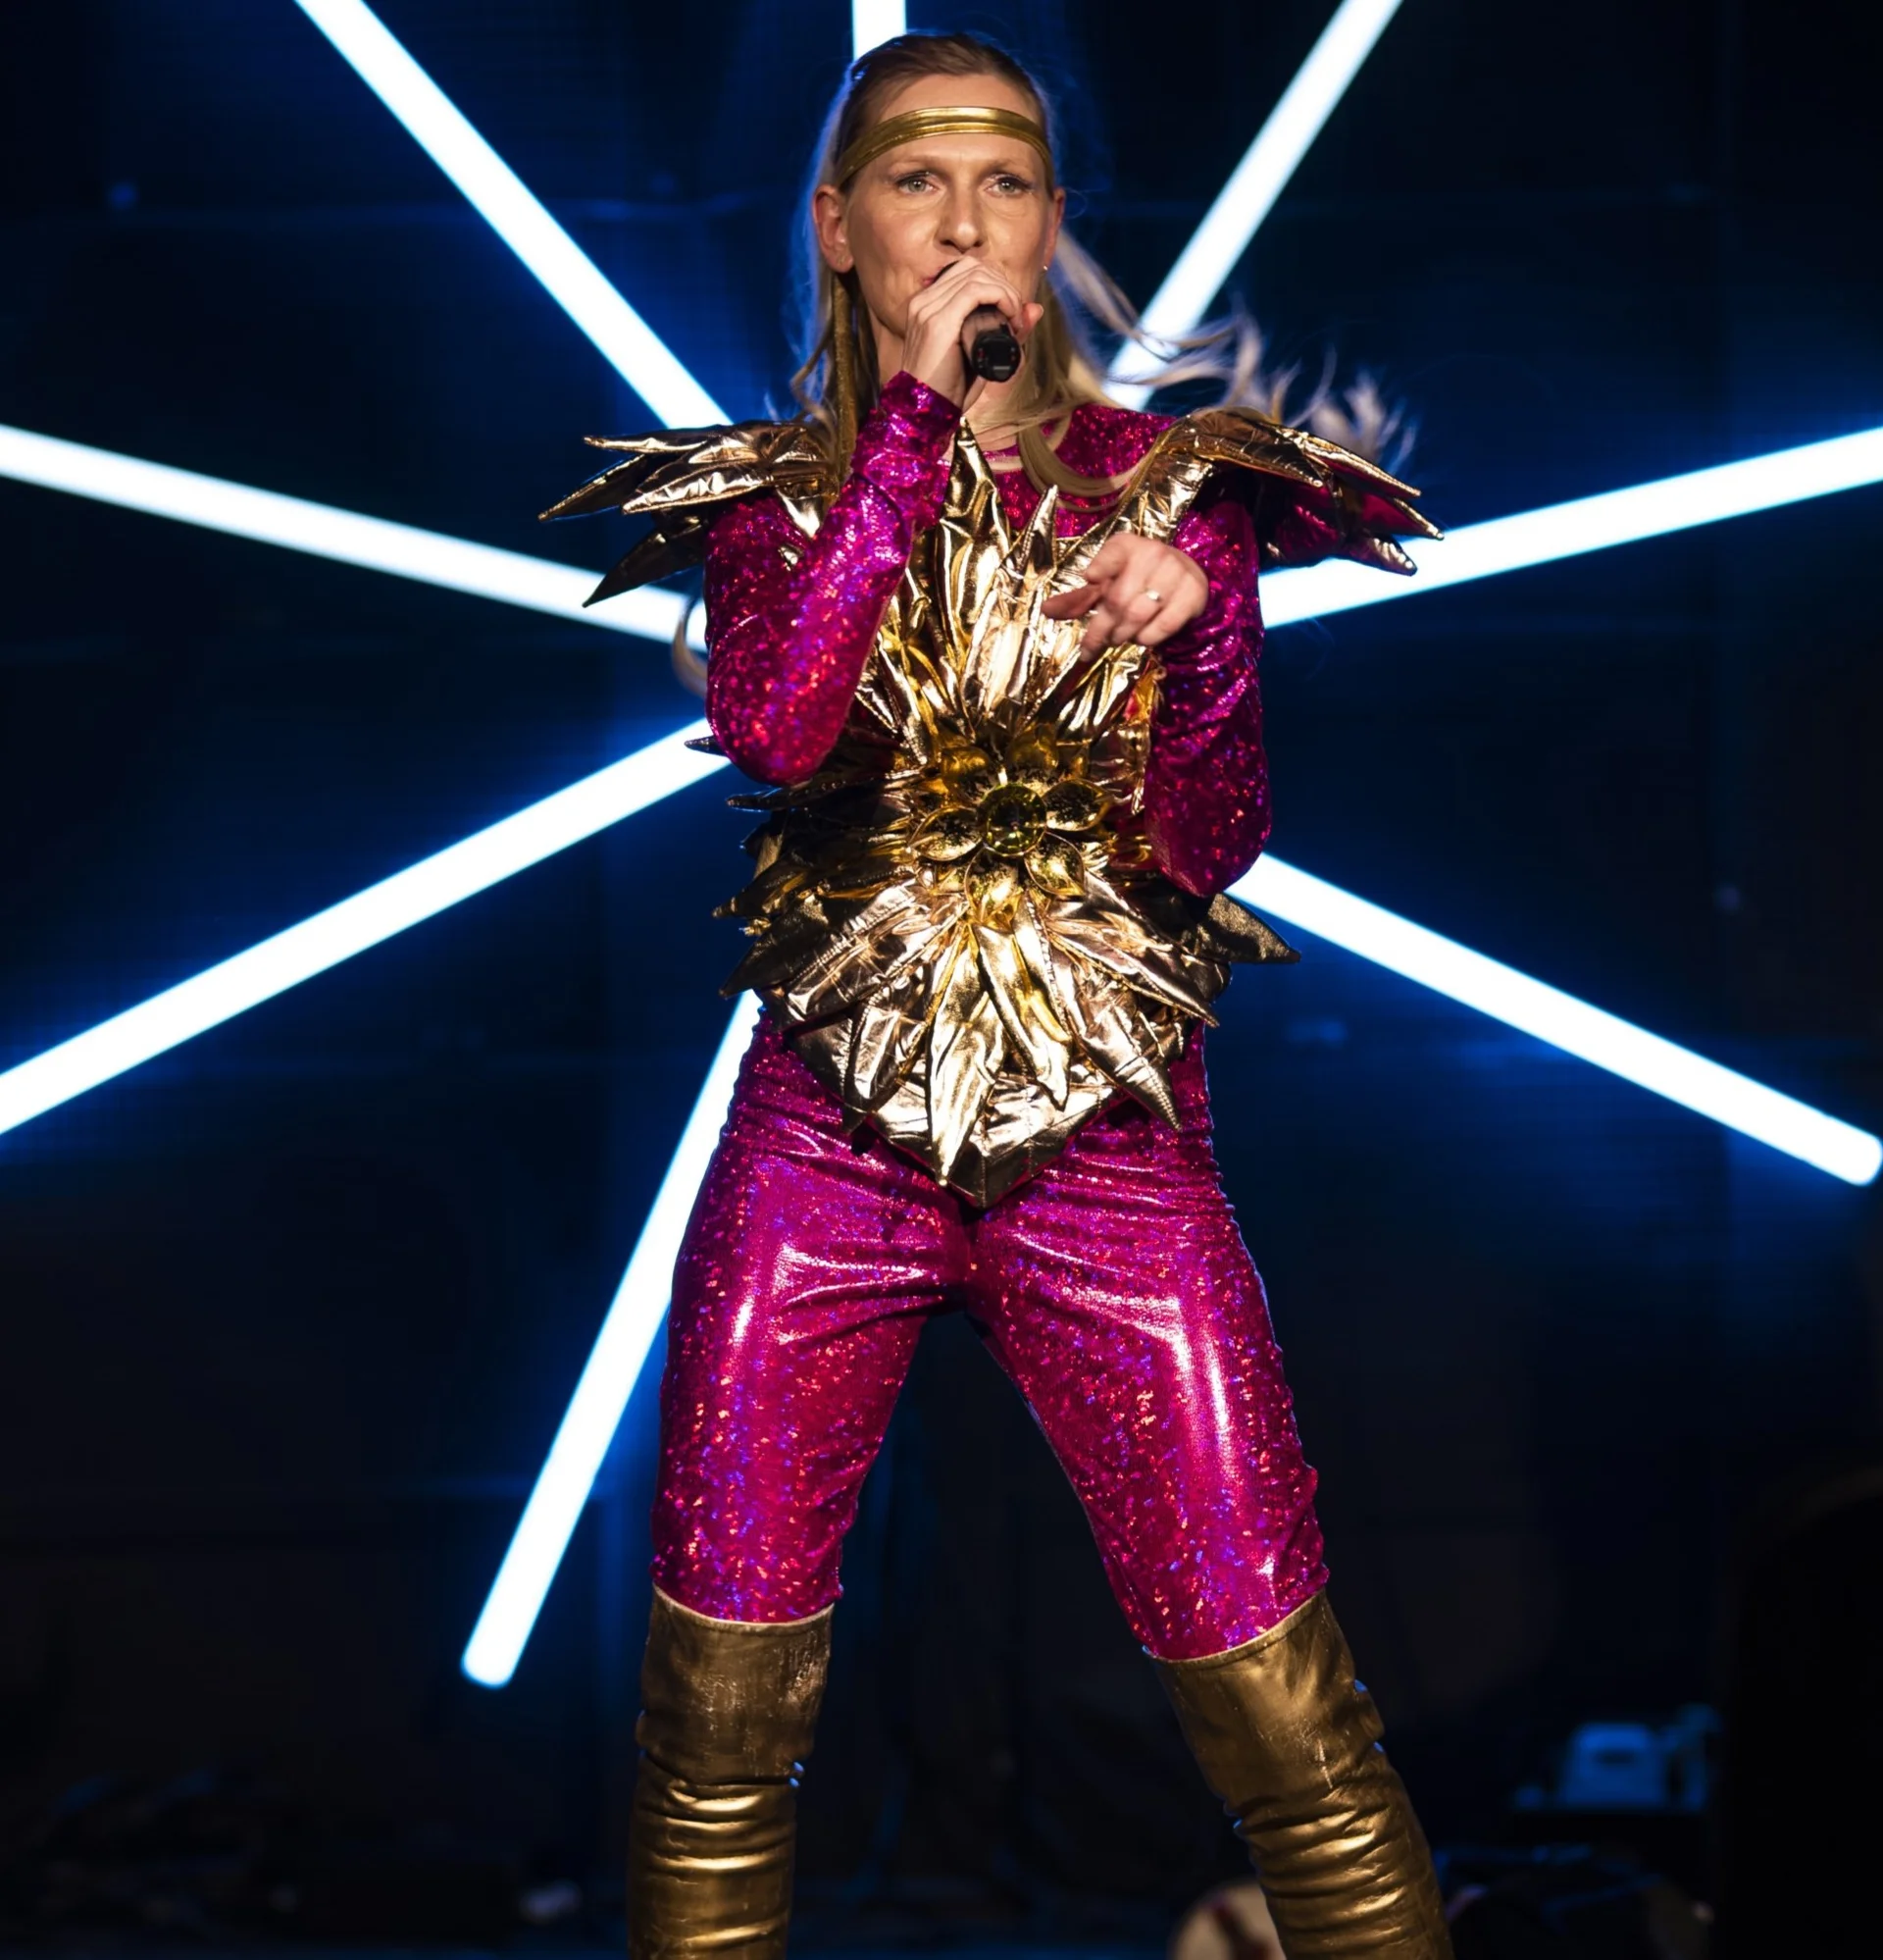 Kobieta w różowo-złotym scenicznym kostiumie śpiewa do mikrofonu. Za nią widoczny neon.